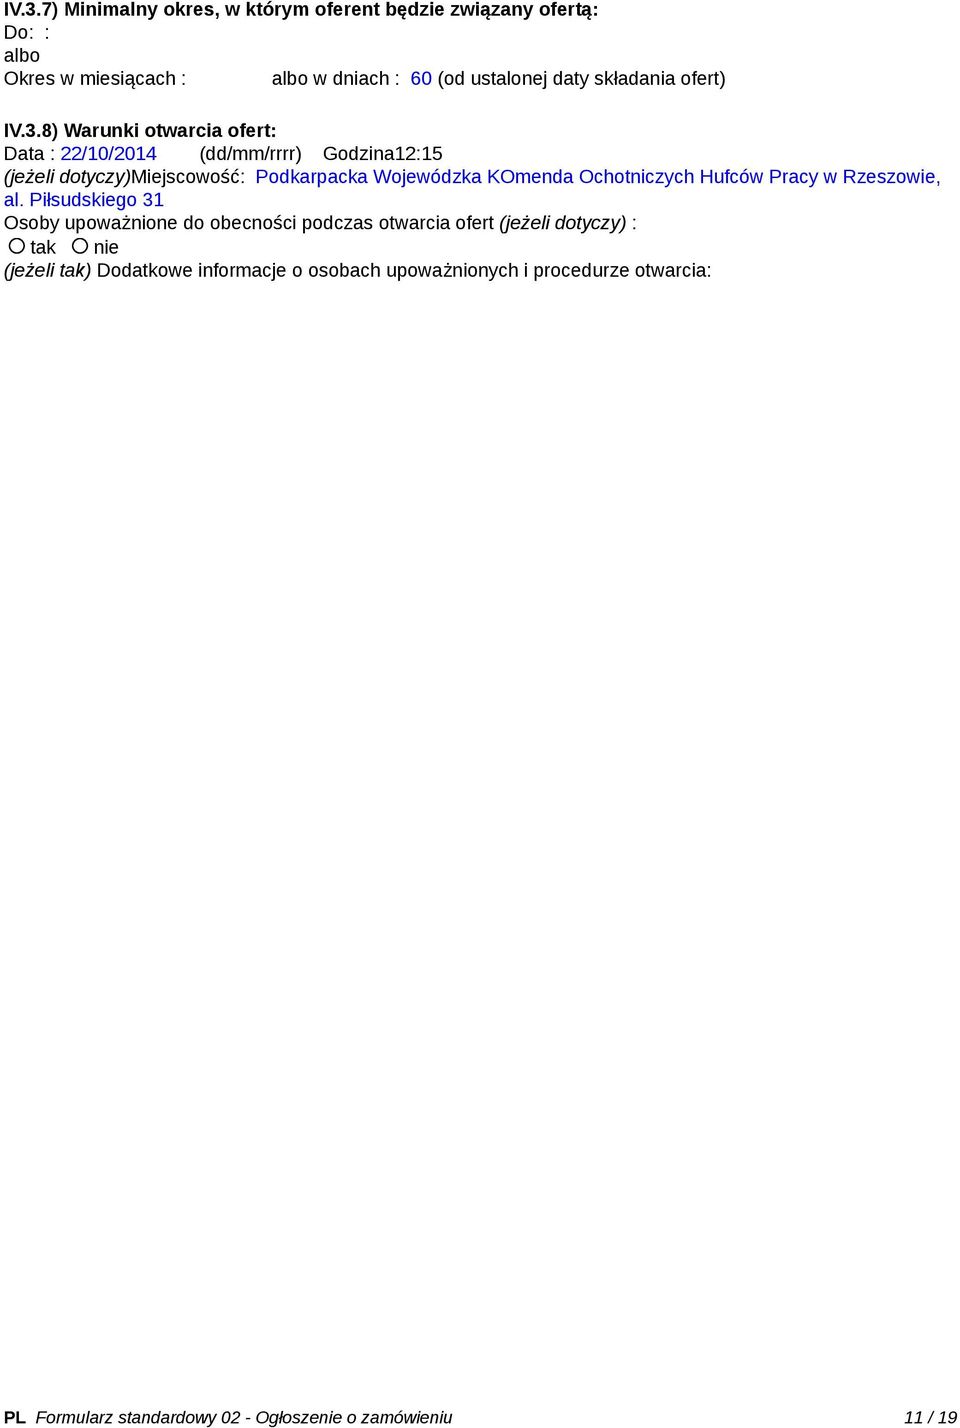 8) Warunki otwarcia ofert: Data : 22/10/2014 (dd/mm/rrrr) Godzina12:15 (jeżeli dotyczy)miejscowość: Podkarpacka Wojewódzka KOmenda